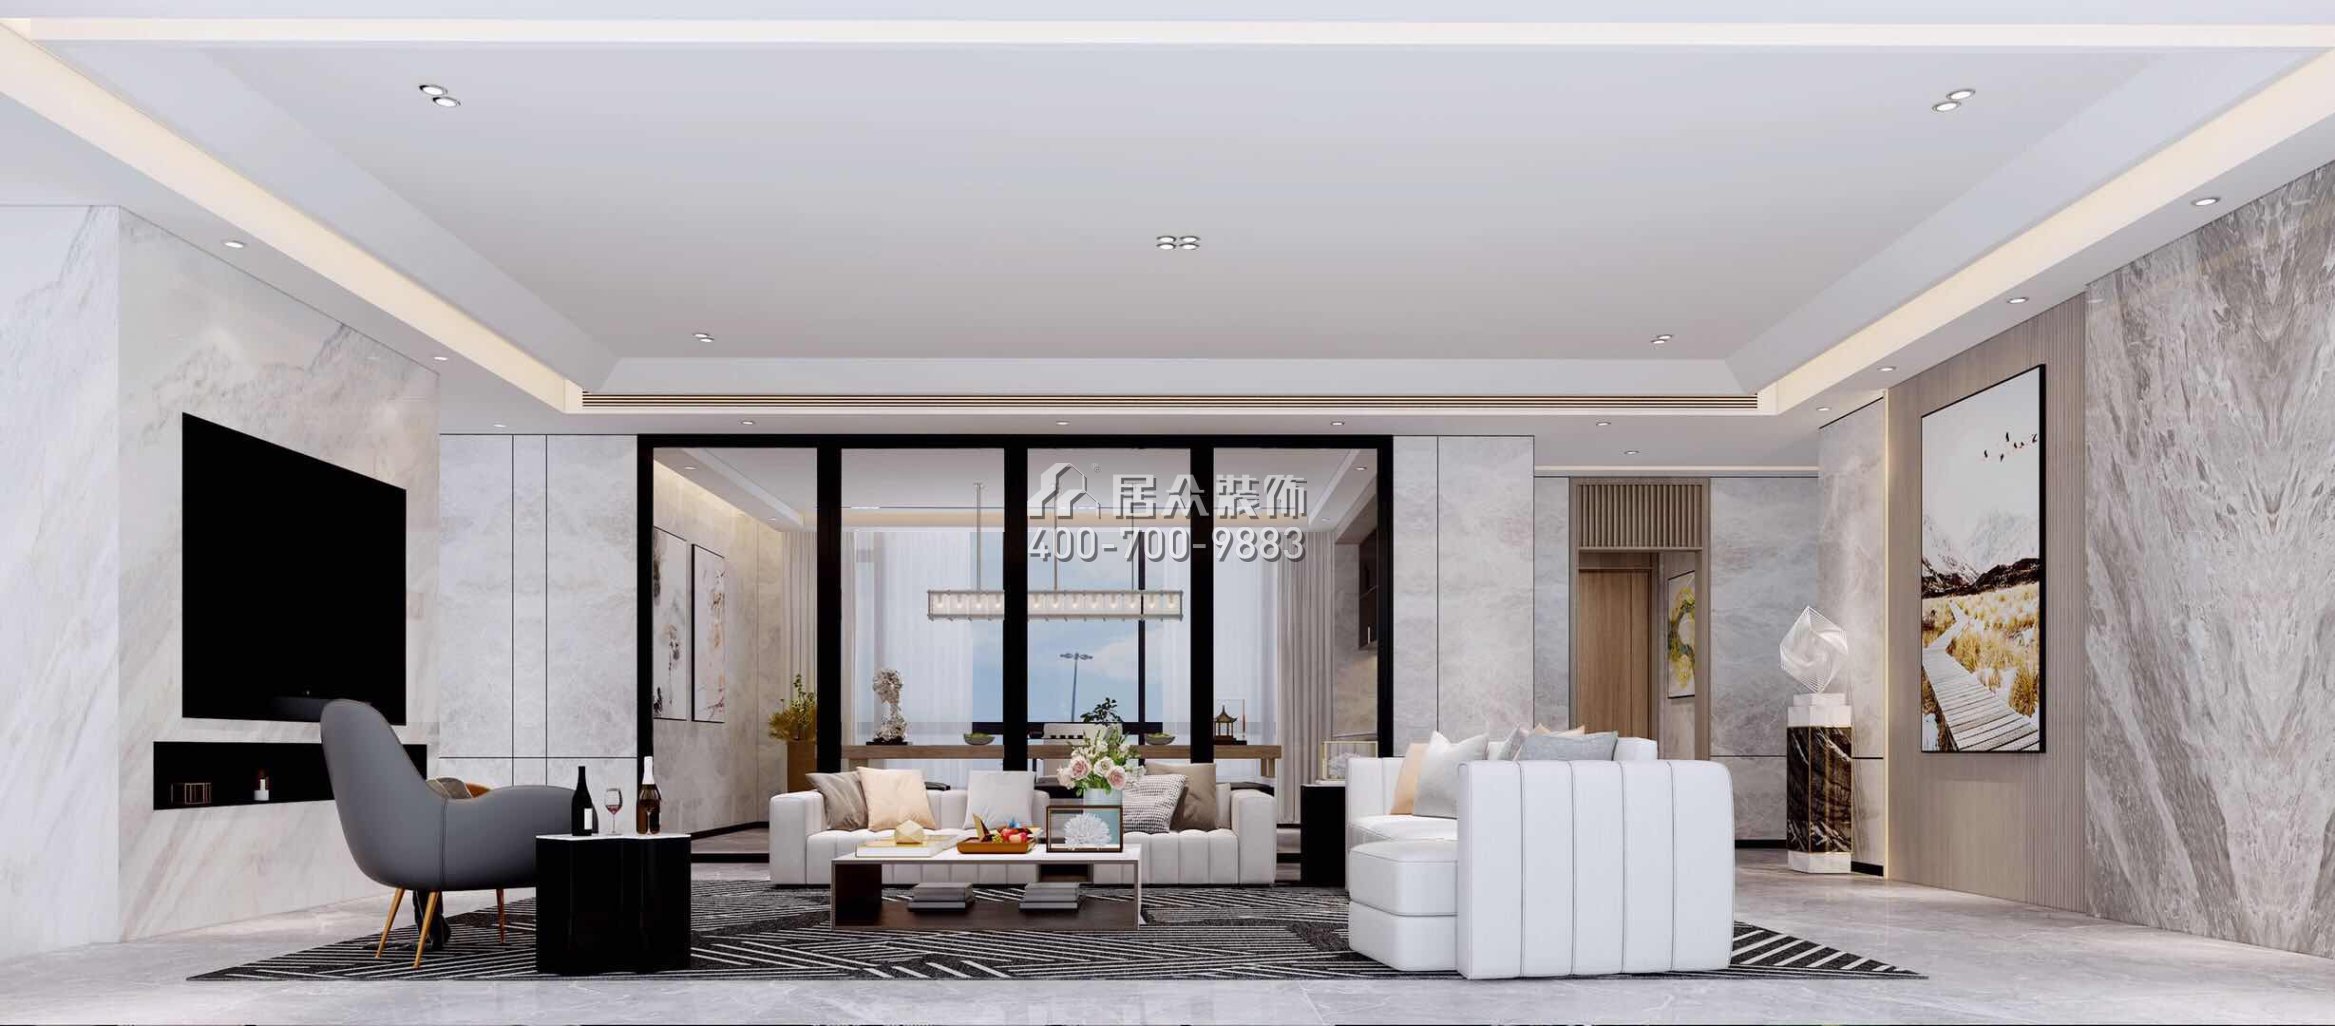 自建房300平方米现代简约风格平层户型客厅装修效果图